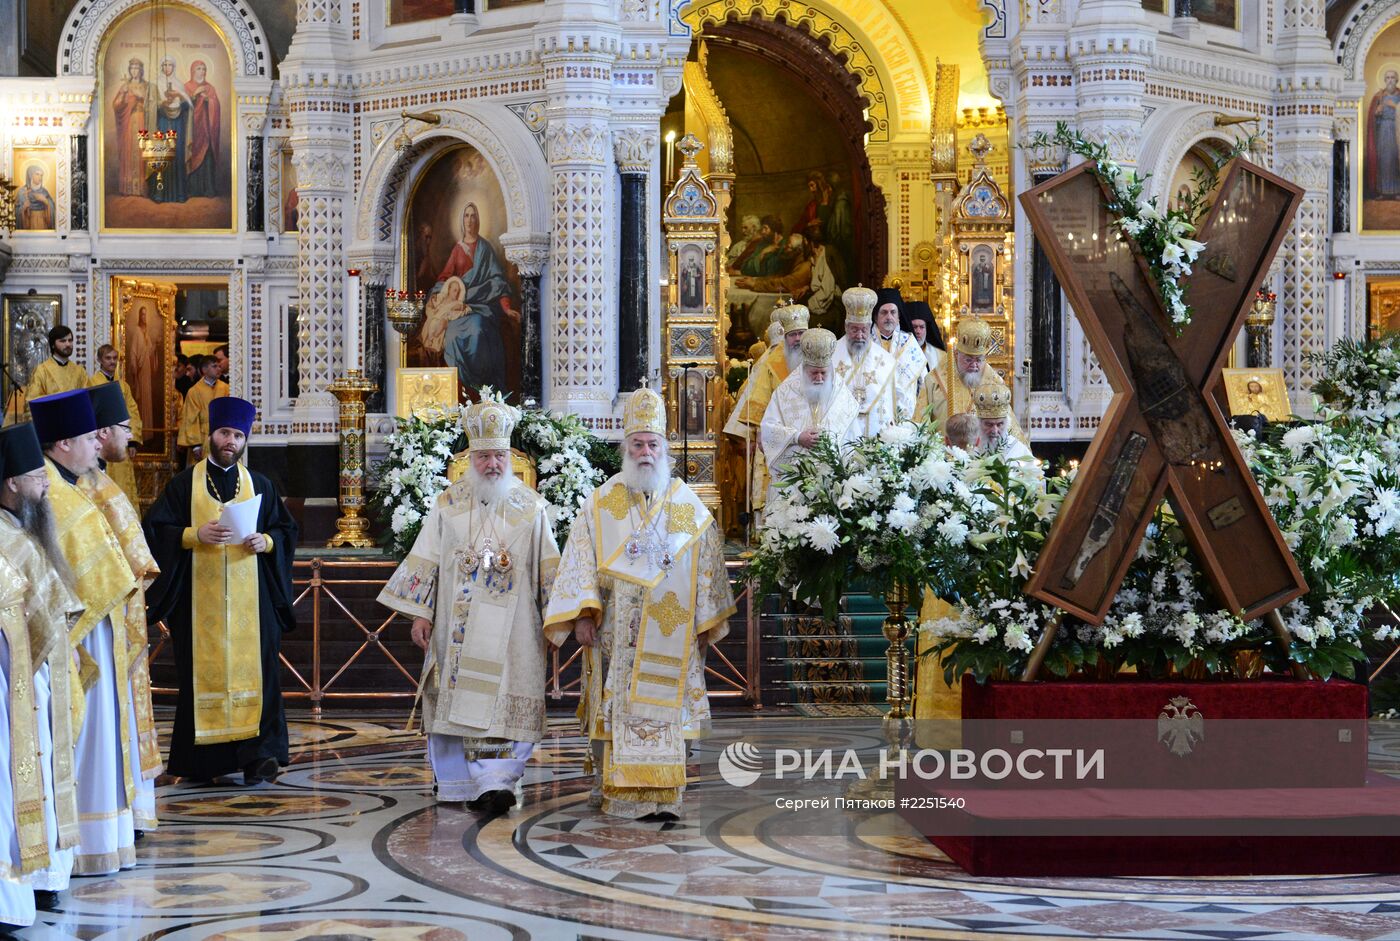 Патриаршее служение в честь 1025-летия Крещения Руси